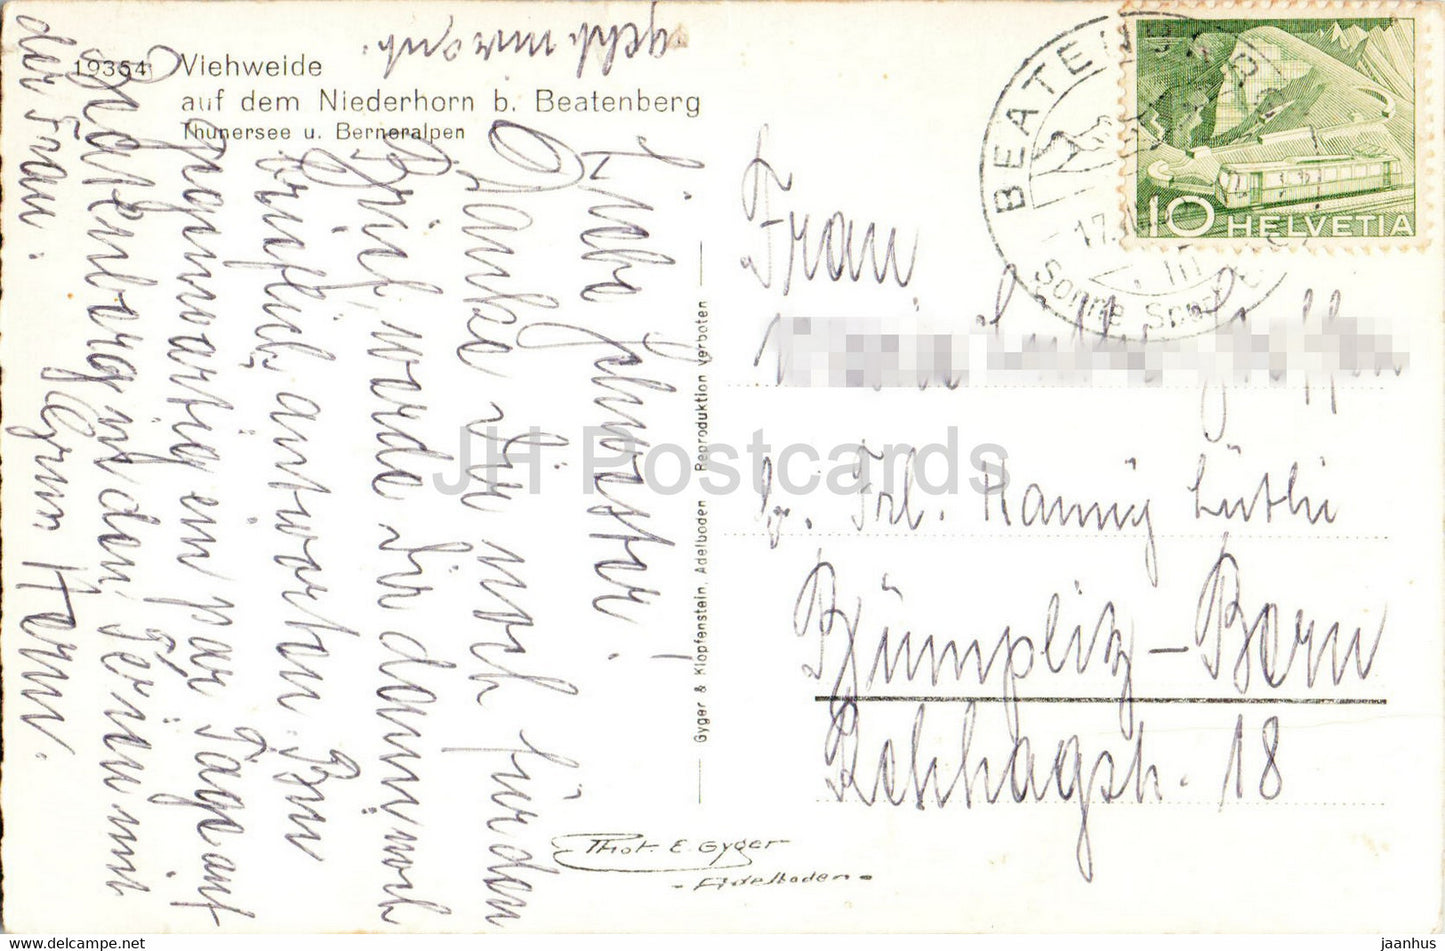 Viehweide auf dem Niederhorn b Beatenberg - Thunersee - animals - cow - 19354 - old postcard - Switzerland - used